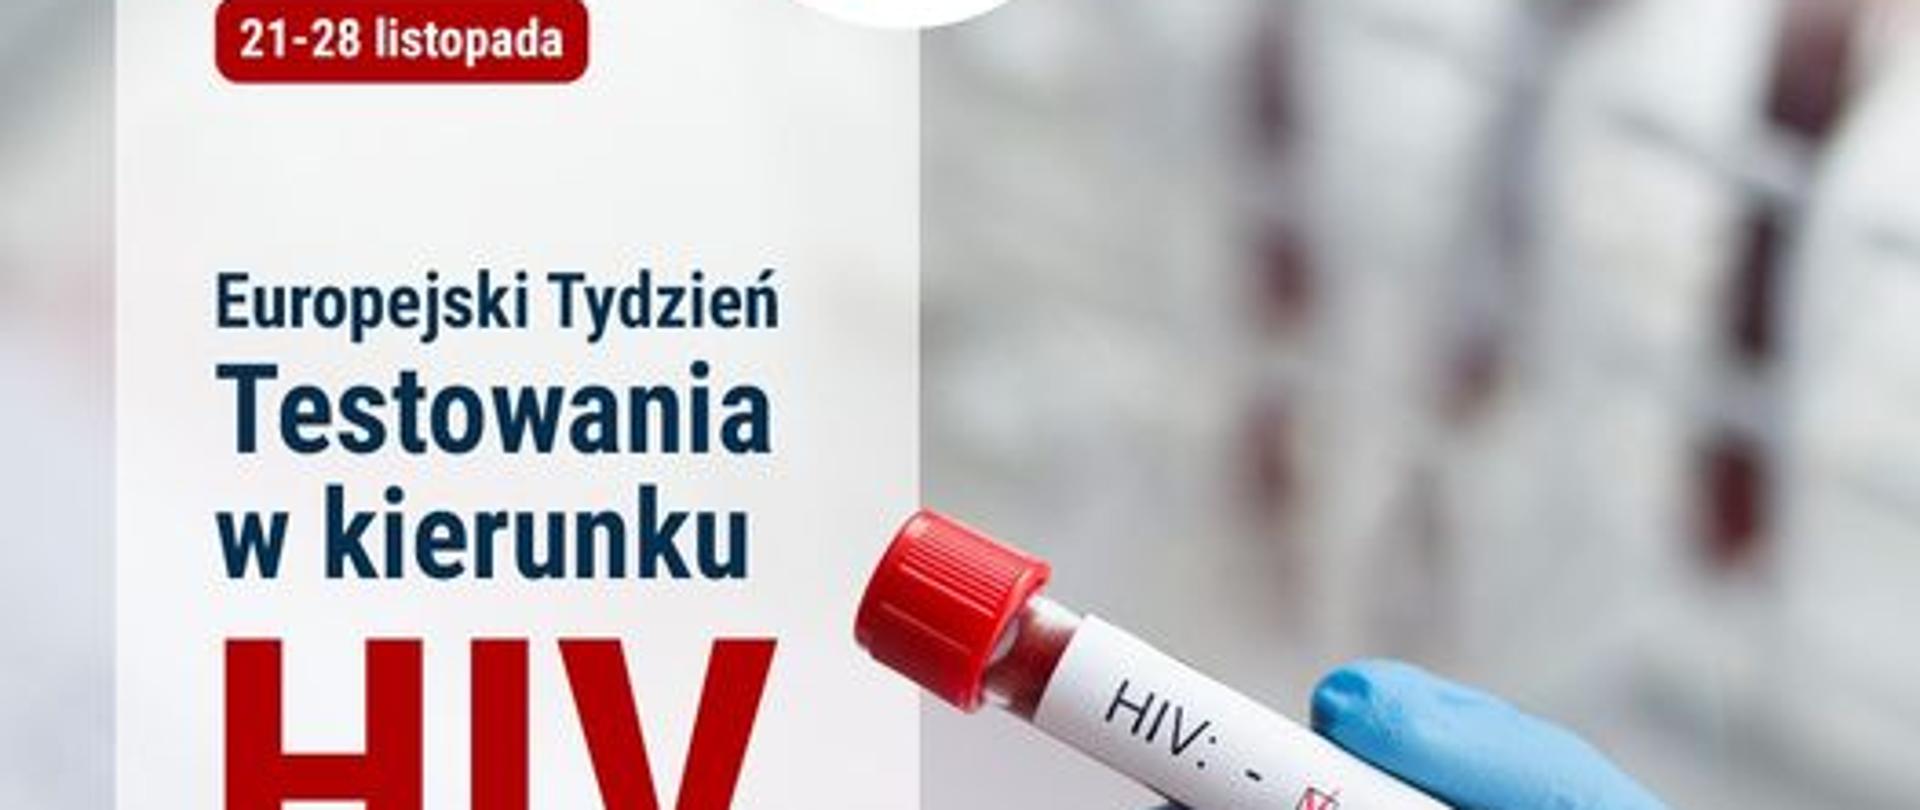 21-28 listopada Europejski Tydzień Testowania w kierunku HIV